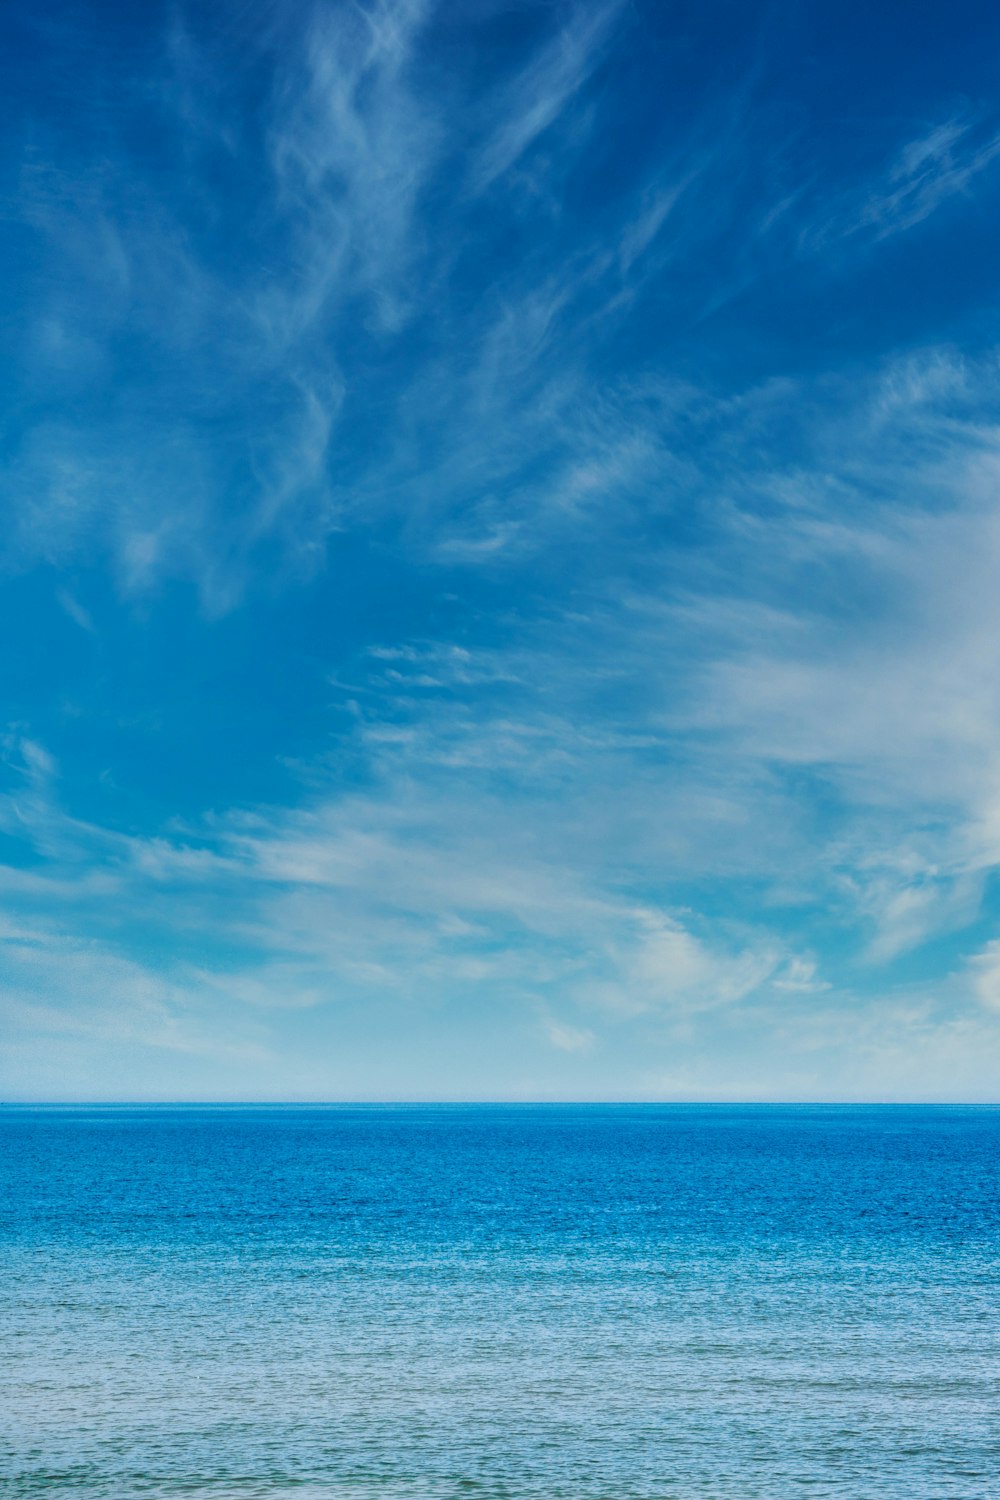 Khám phá hình ảnh mây trời xanh HD miễn phí tải về trên Unsplash. Được chụp từ góc nhìn cao, bức hình này sẽ làm bạn nhớ đến không gian rộng lớn và vẻ đẹp của thiên nhiên.